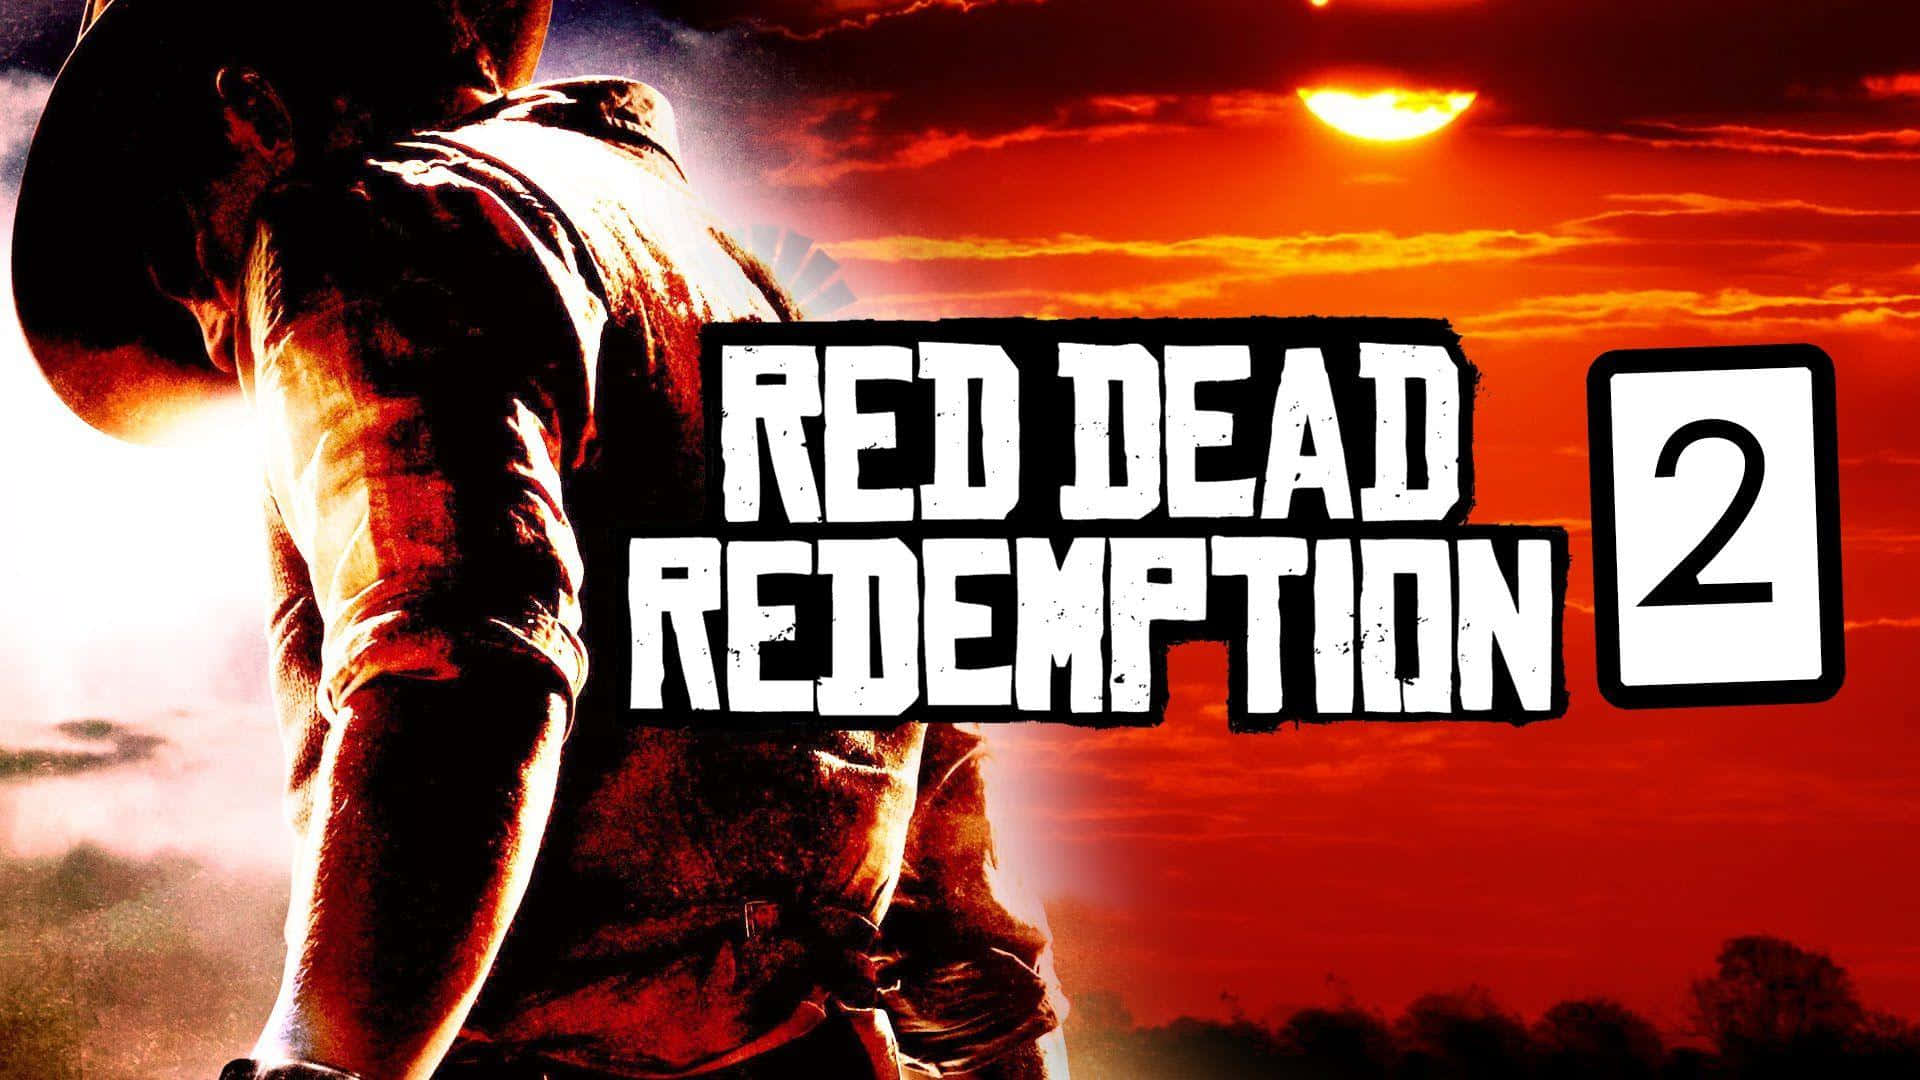 Utforskavilda Västern I Red Dead Redemption 2 I Full Hd Som Bakgrundsbild På Din Dator Eller Mobil. Wallpaper